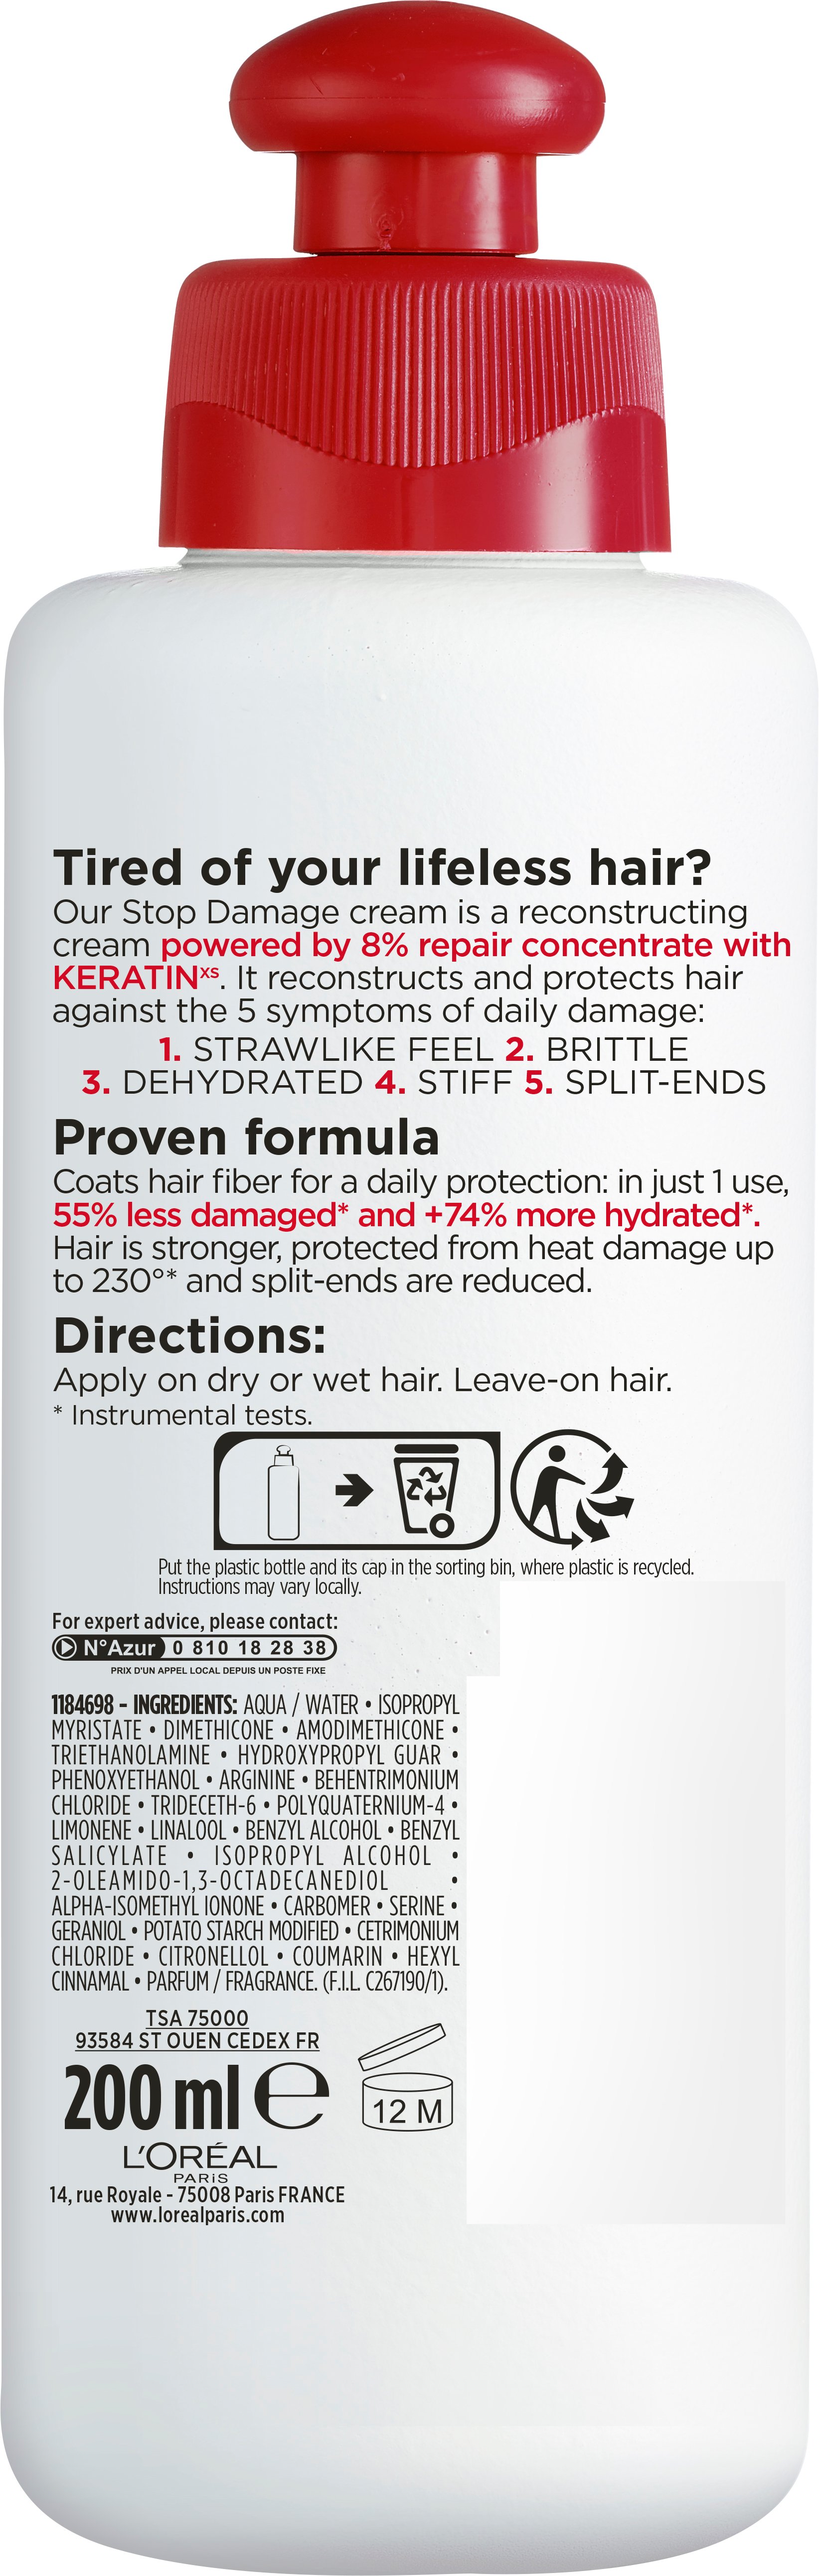 Крем L'Oreal Paris Elseve Повний Відновлення 5 Стоп Пошкодження для відновлення пошкодженого волосся, 200 мл - фото 2